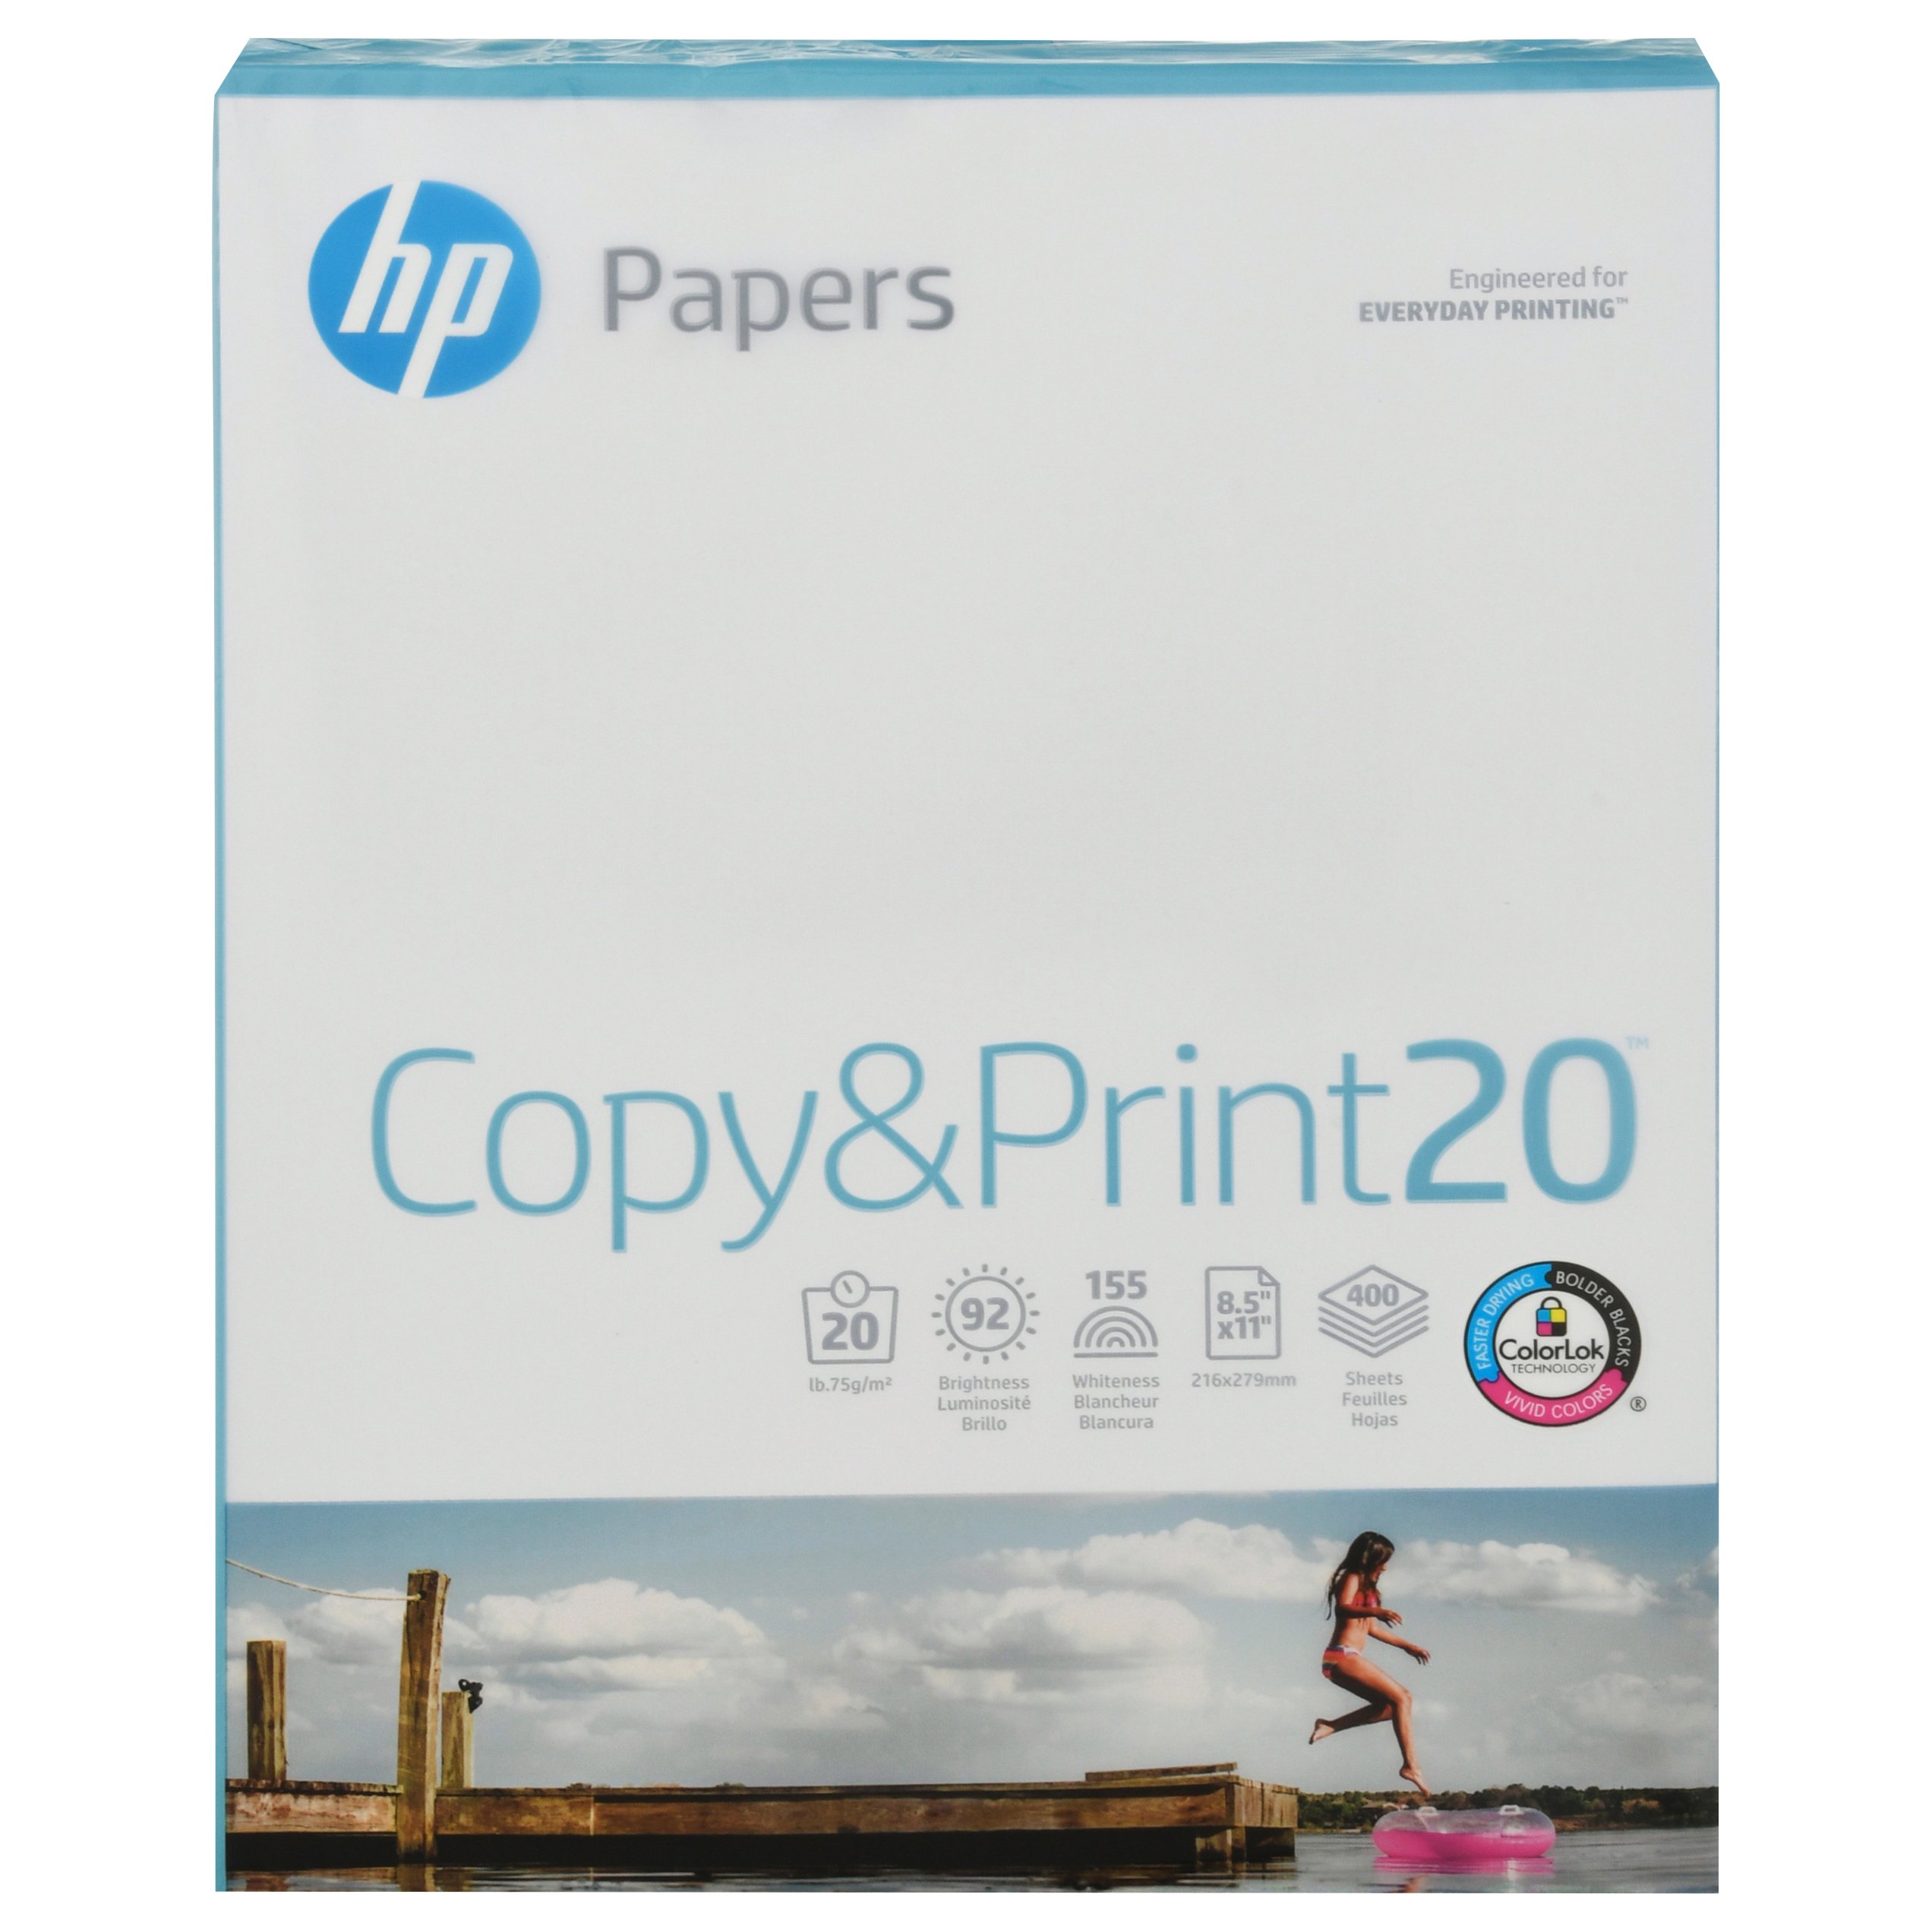 hp printer paper